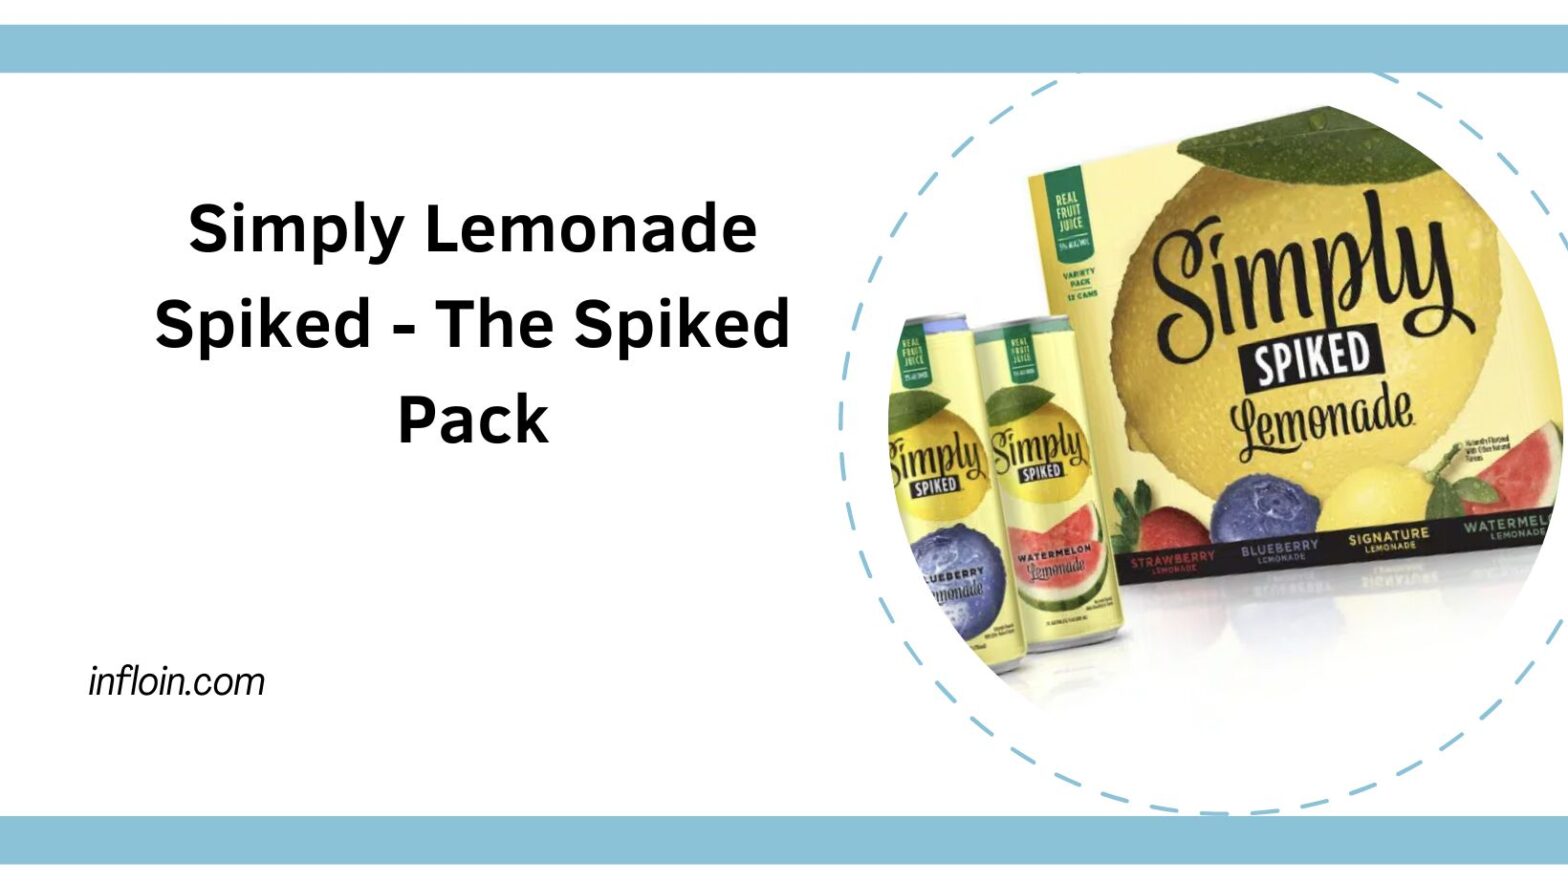 Simply Lemonade Spiked